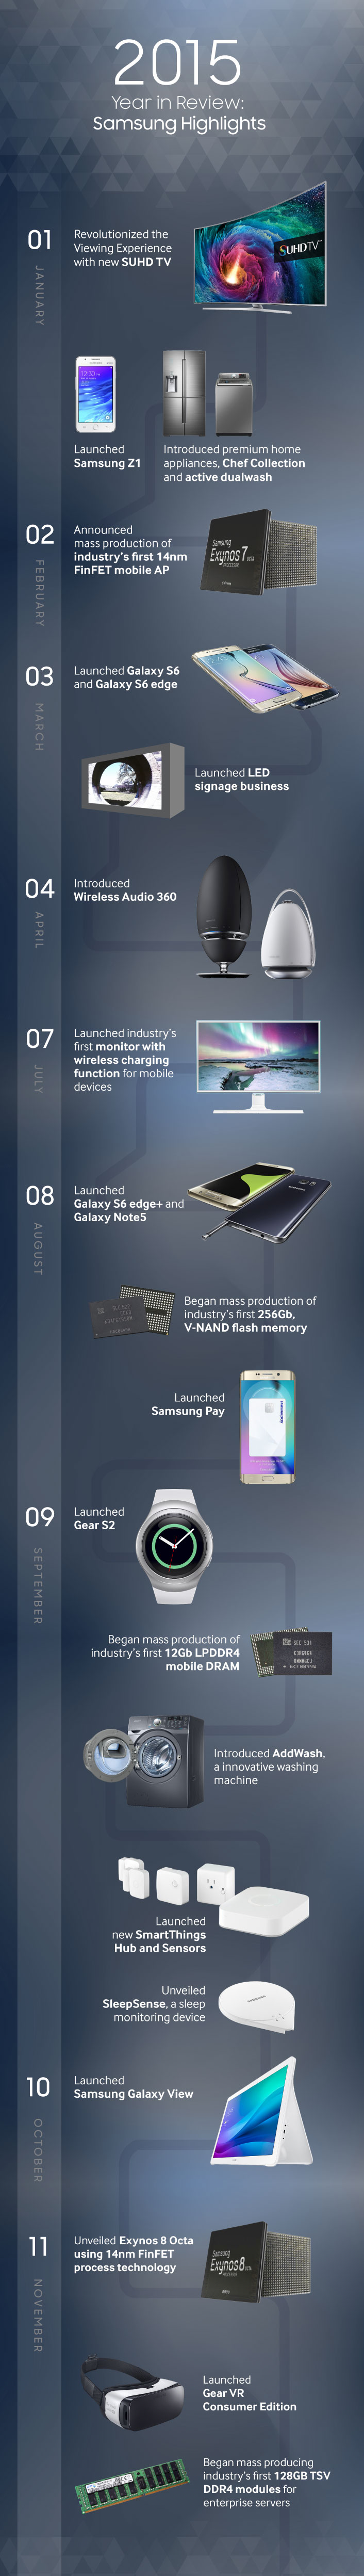 Samsung il 2015 è tutto in un'immagine (1)